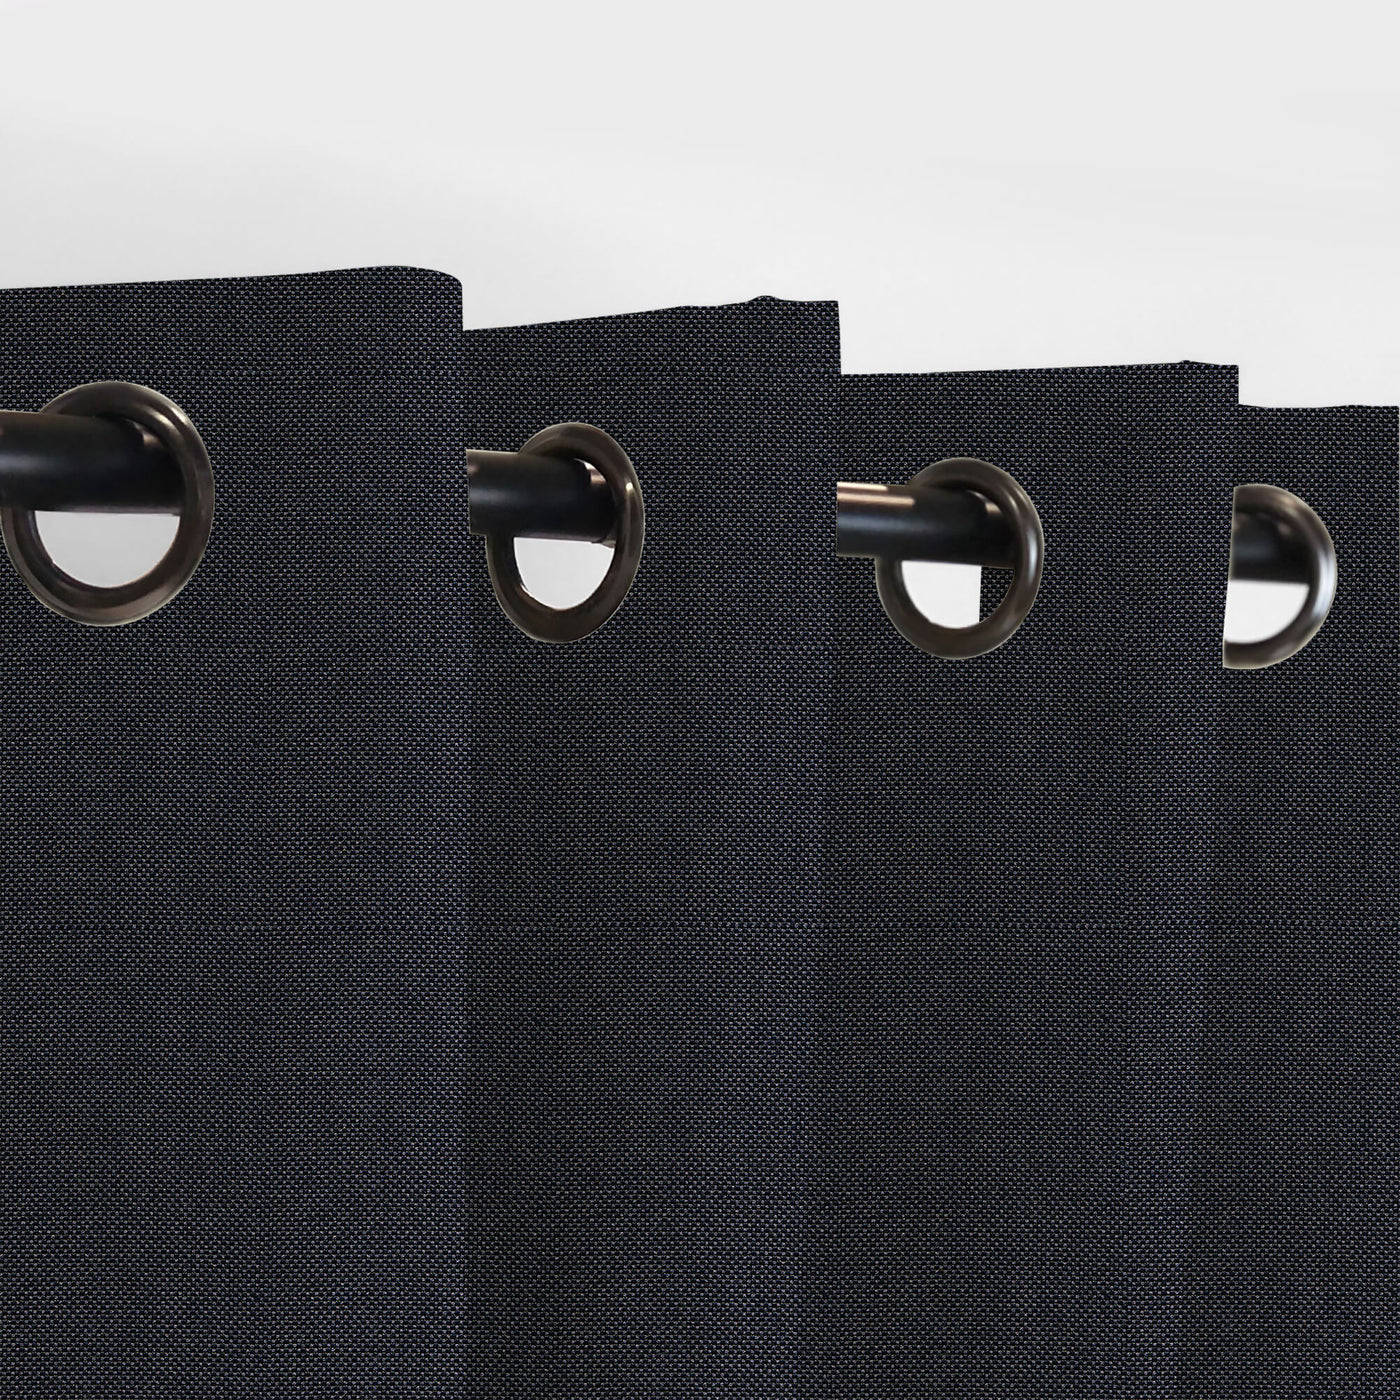 PENGI Outdoor Curtains Waterproof - Sailcloth Black